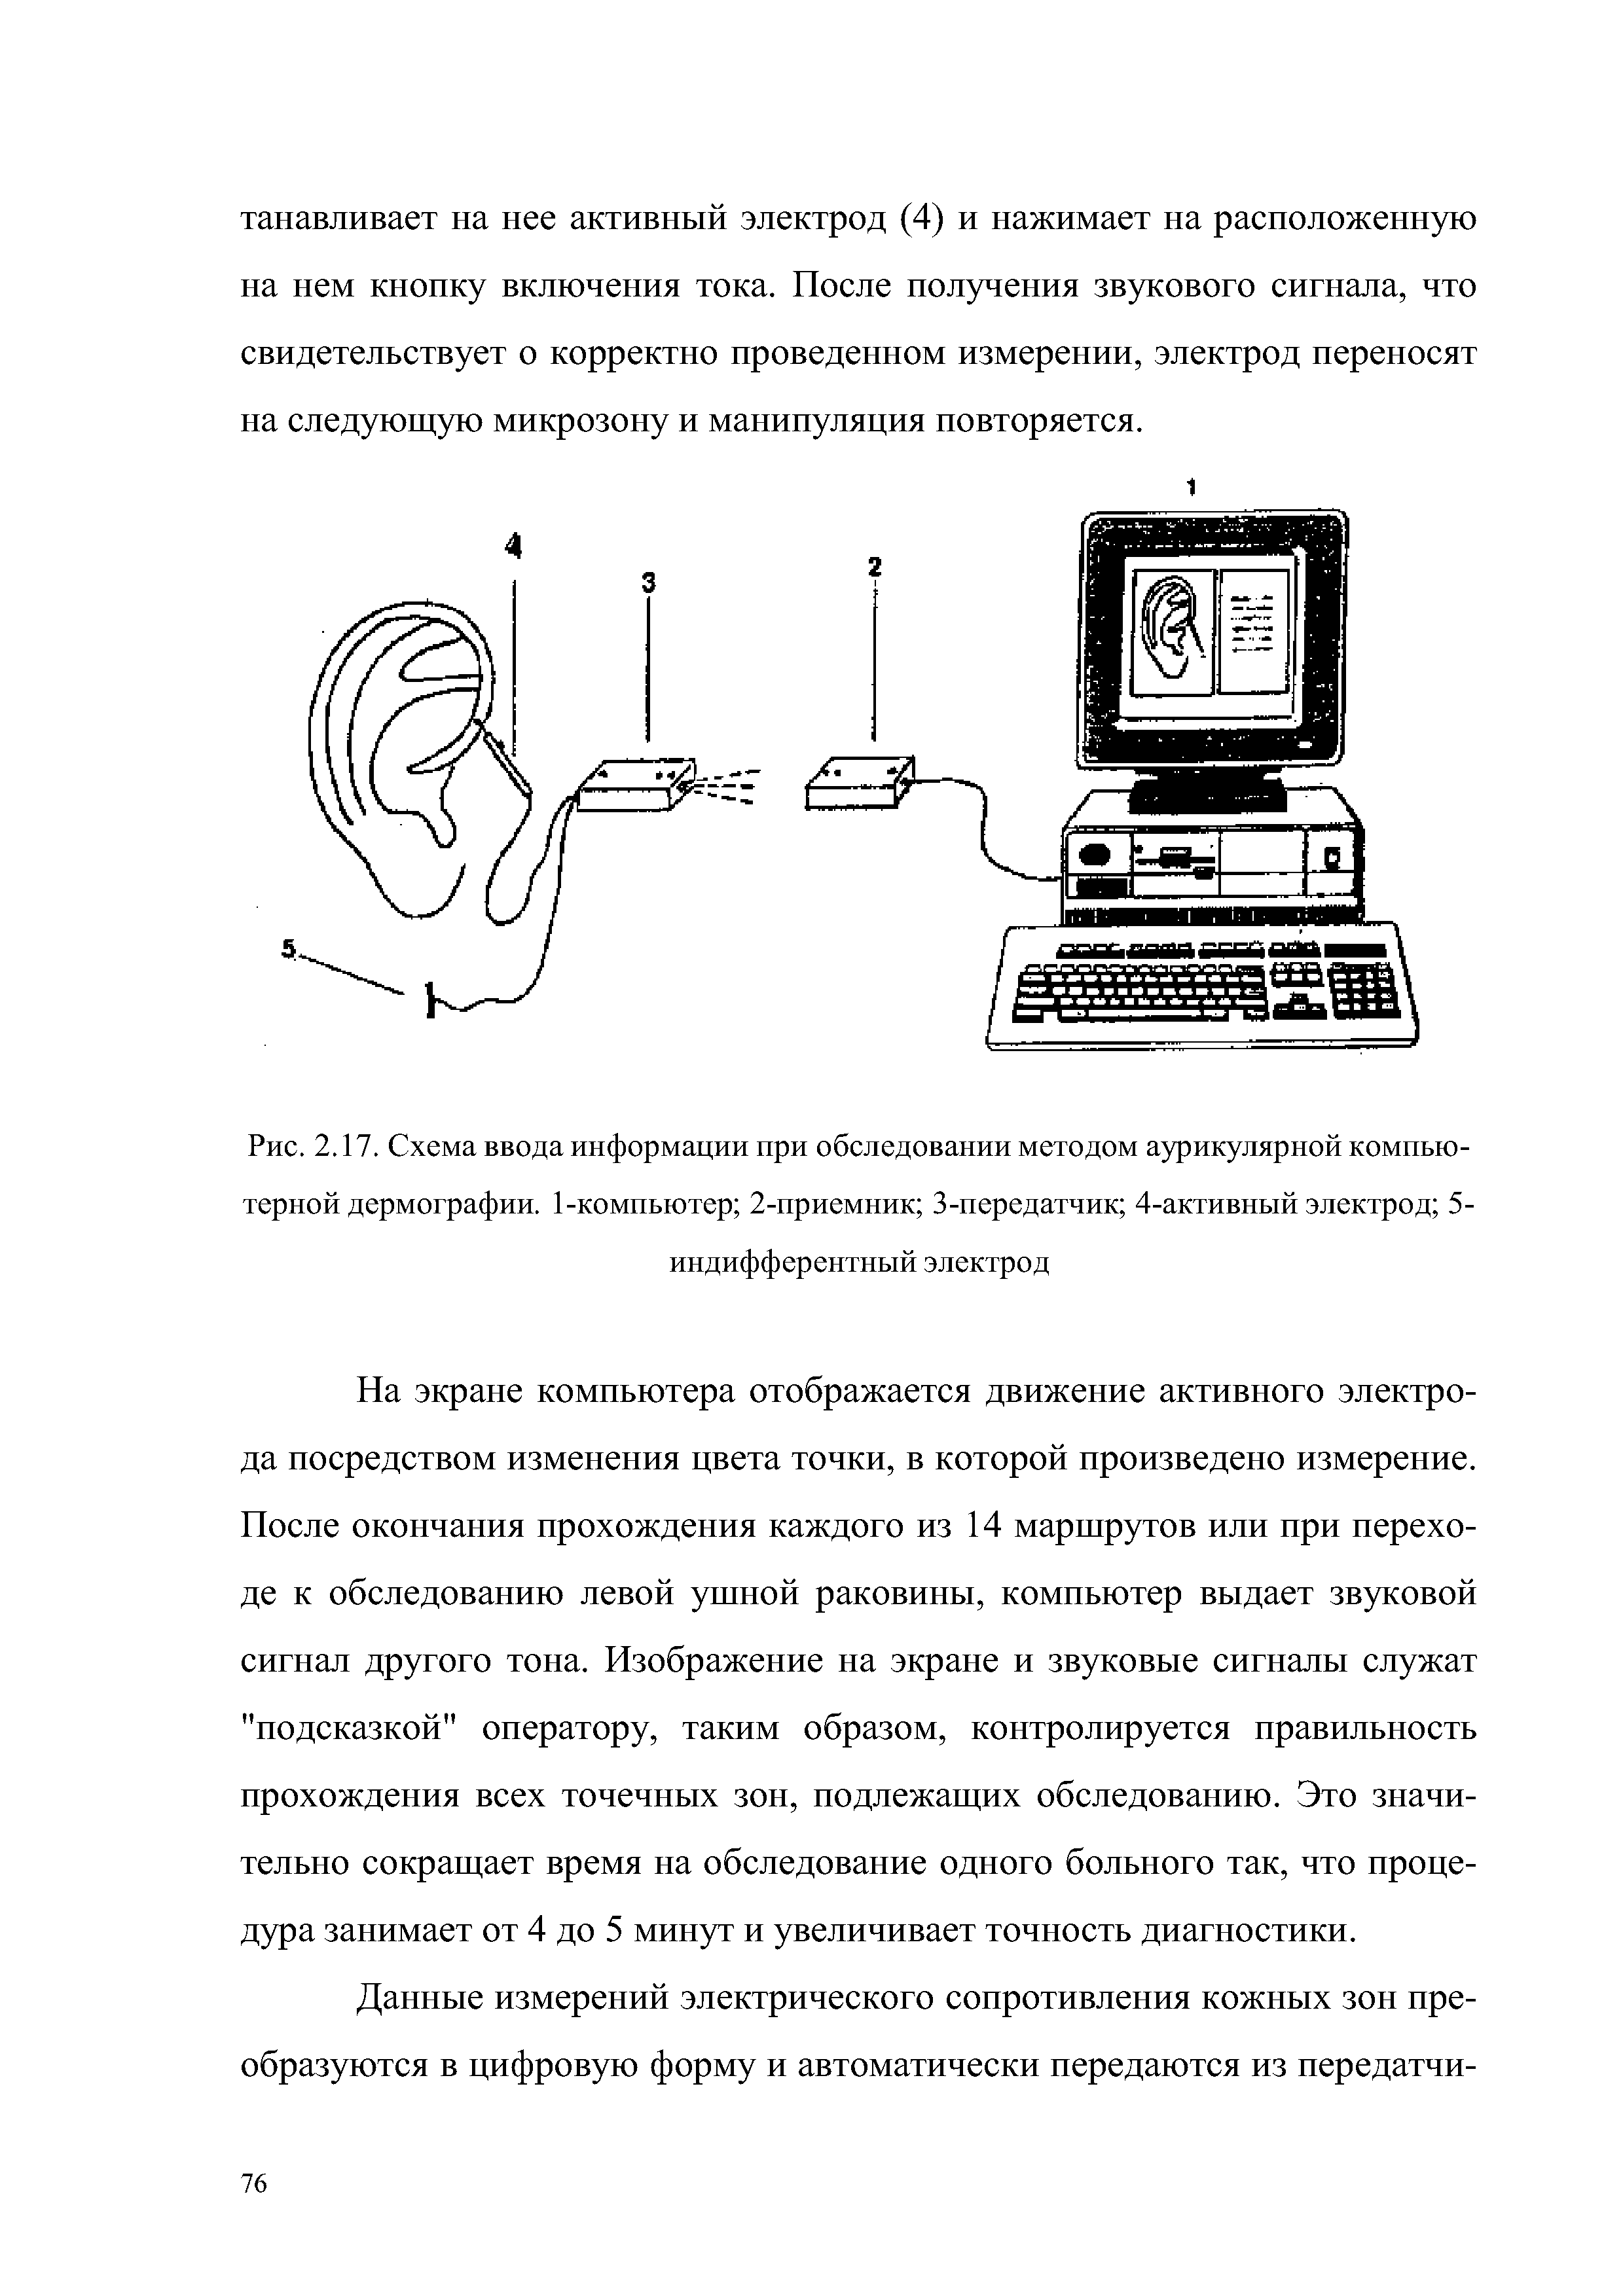 Рис. 2.17. Схема ввода информации при обследовании методом аурикулярной компьютерной дермографии. 1-компьютер 2-приемник 3-передатчик 4-активный электрод 5-индифферентный электрод...